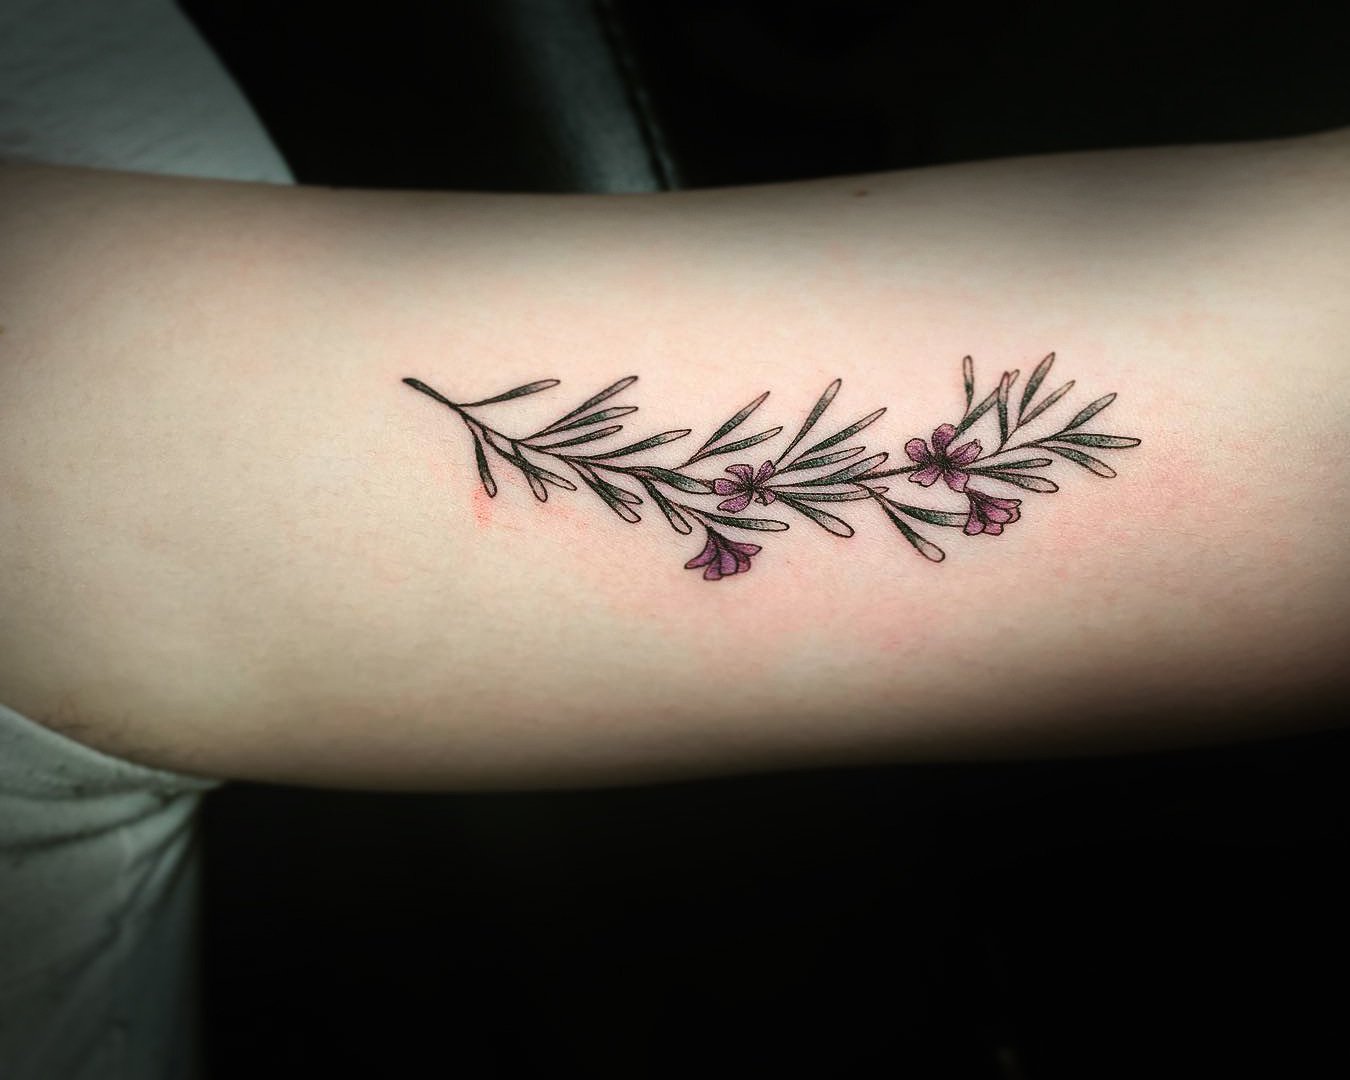 Rosemary tattoo by Cana Arik | Post 27421